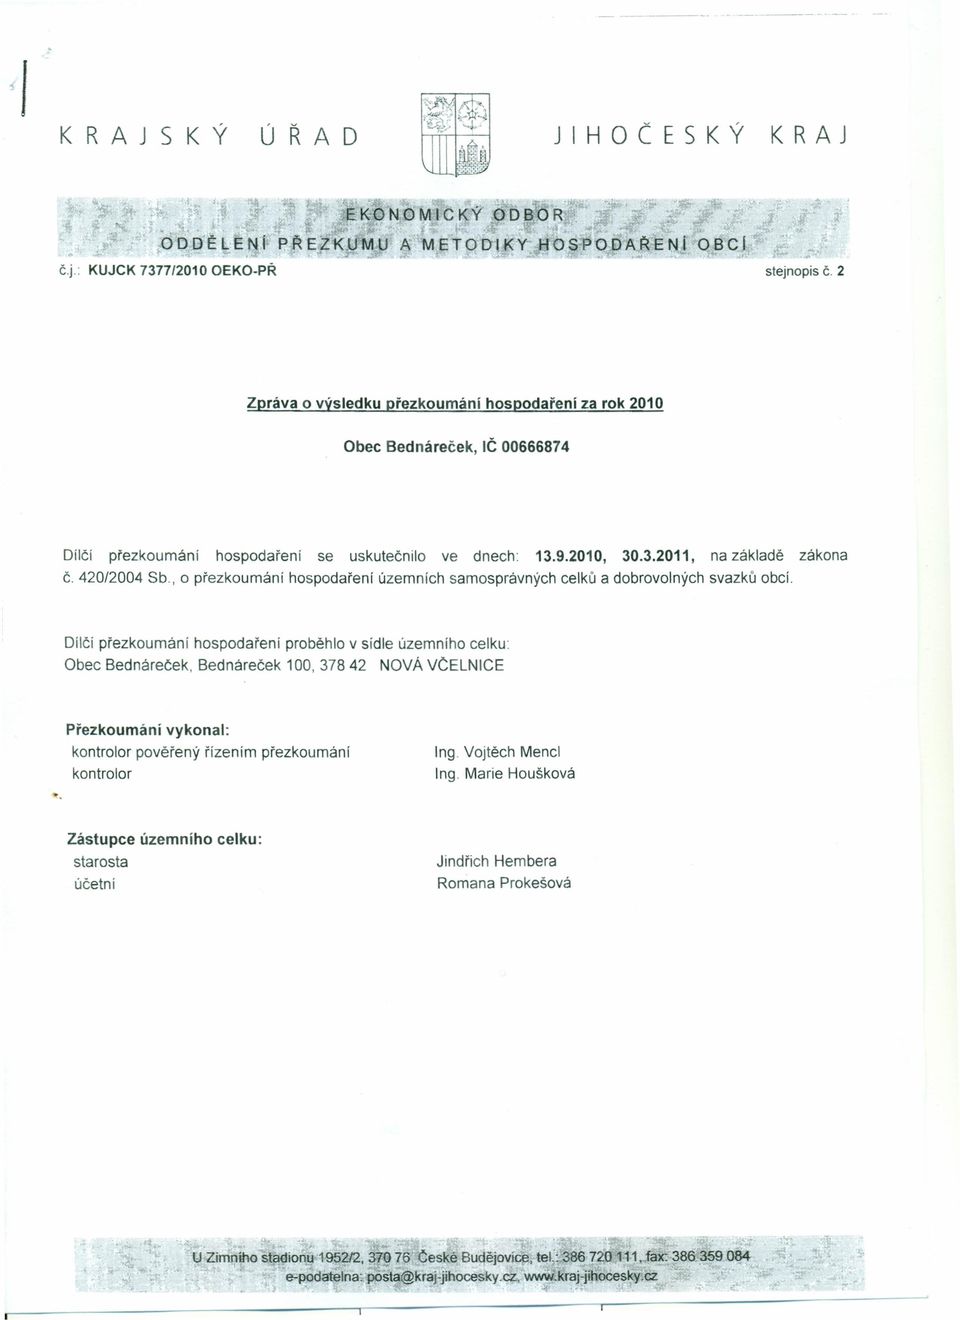 420/2004 Sb, o přezkoumání hospodaření územních samosprávných celků a dobrovolných svazků obcí.